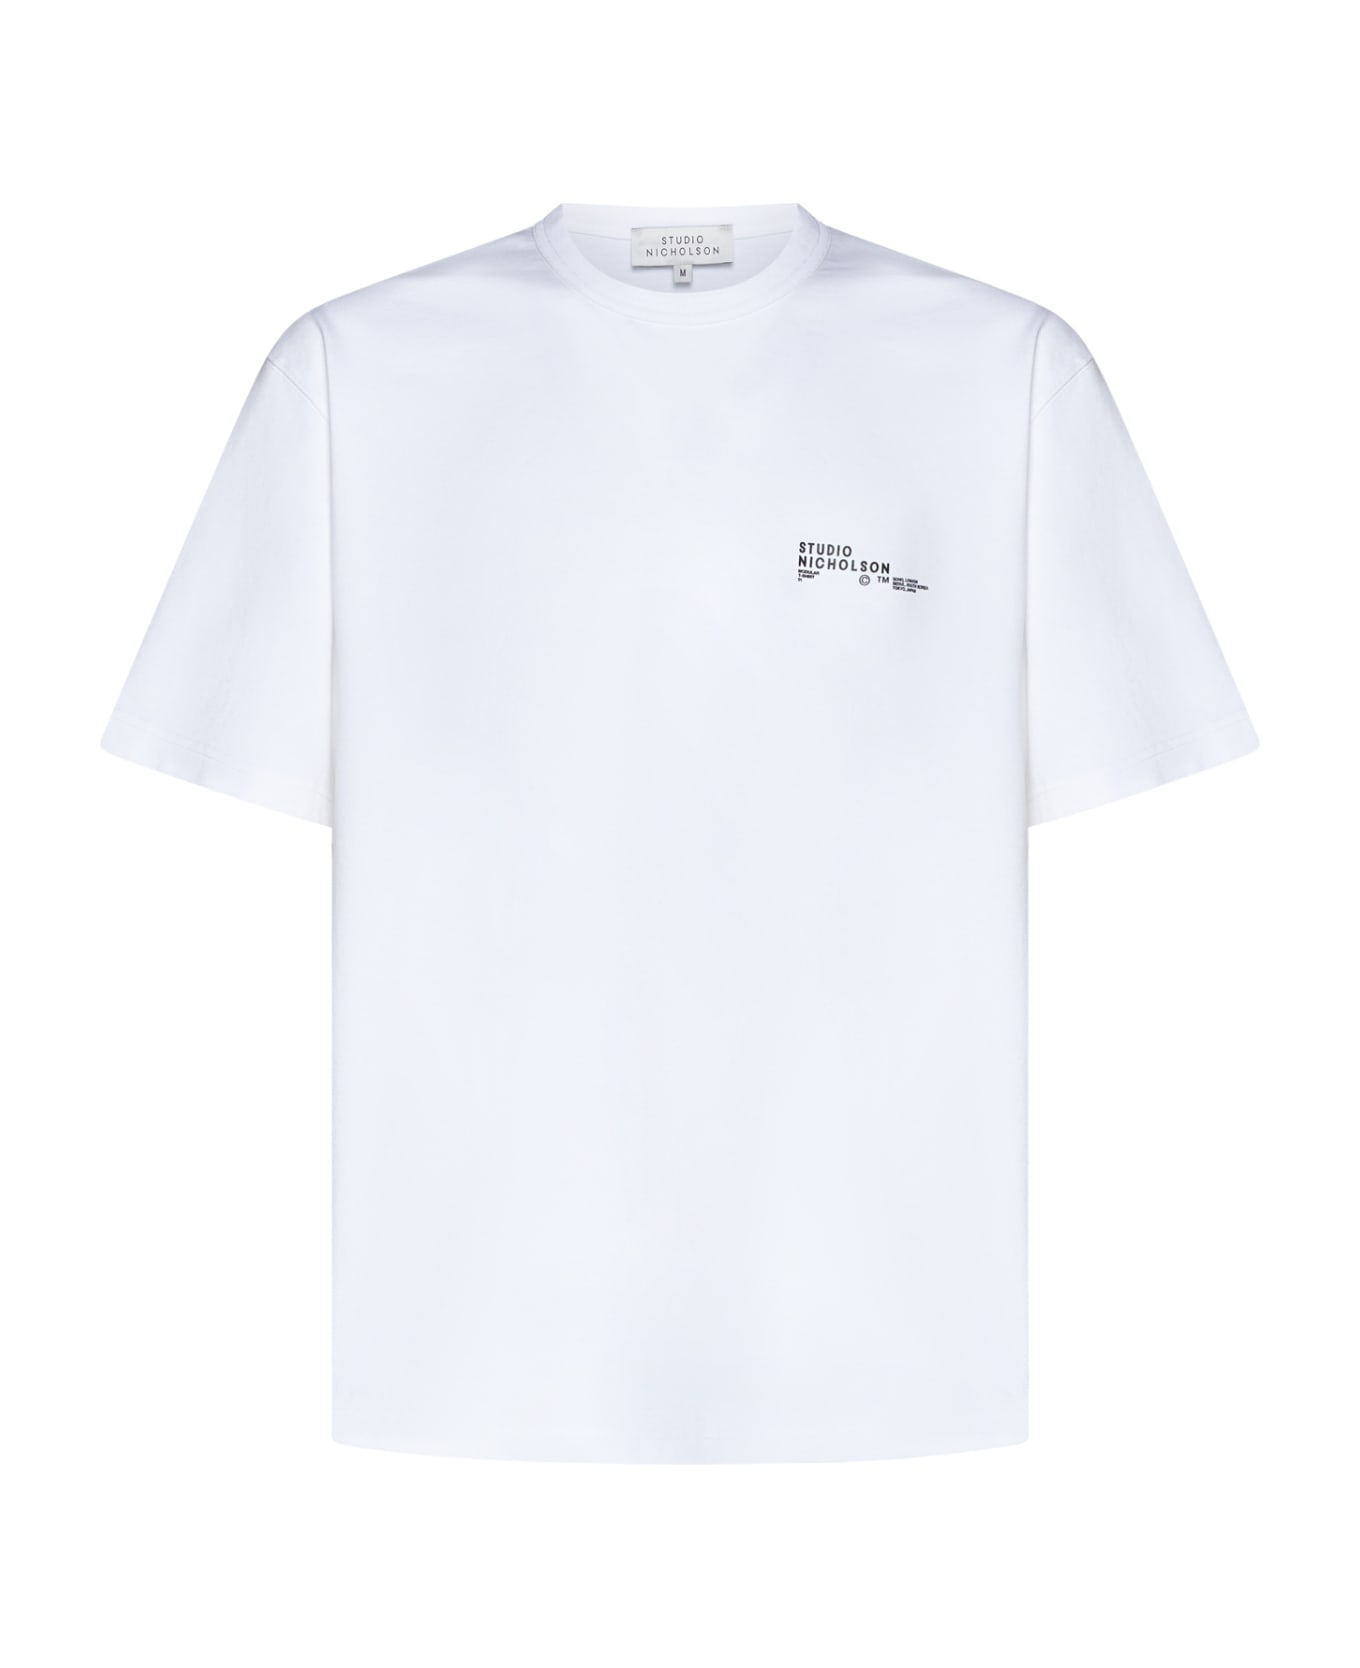 Studio Nicholson T-Shirt - White